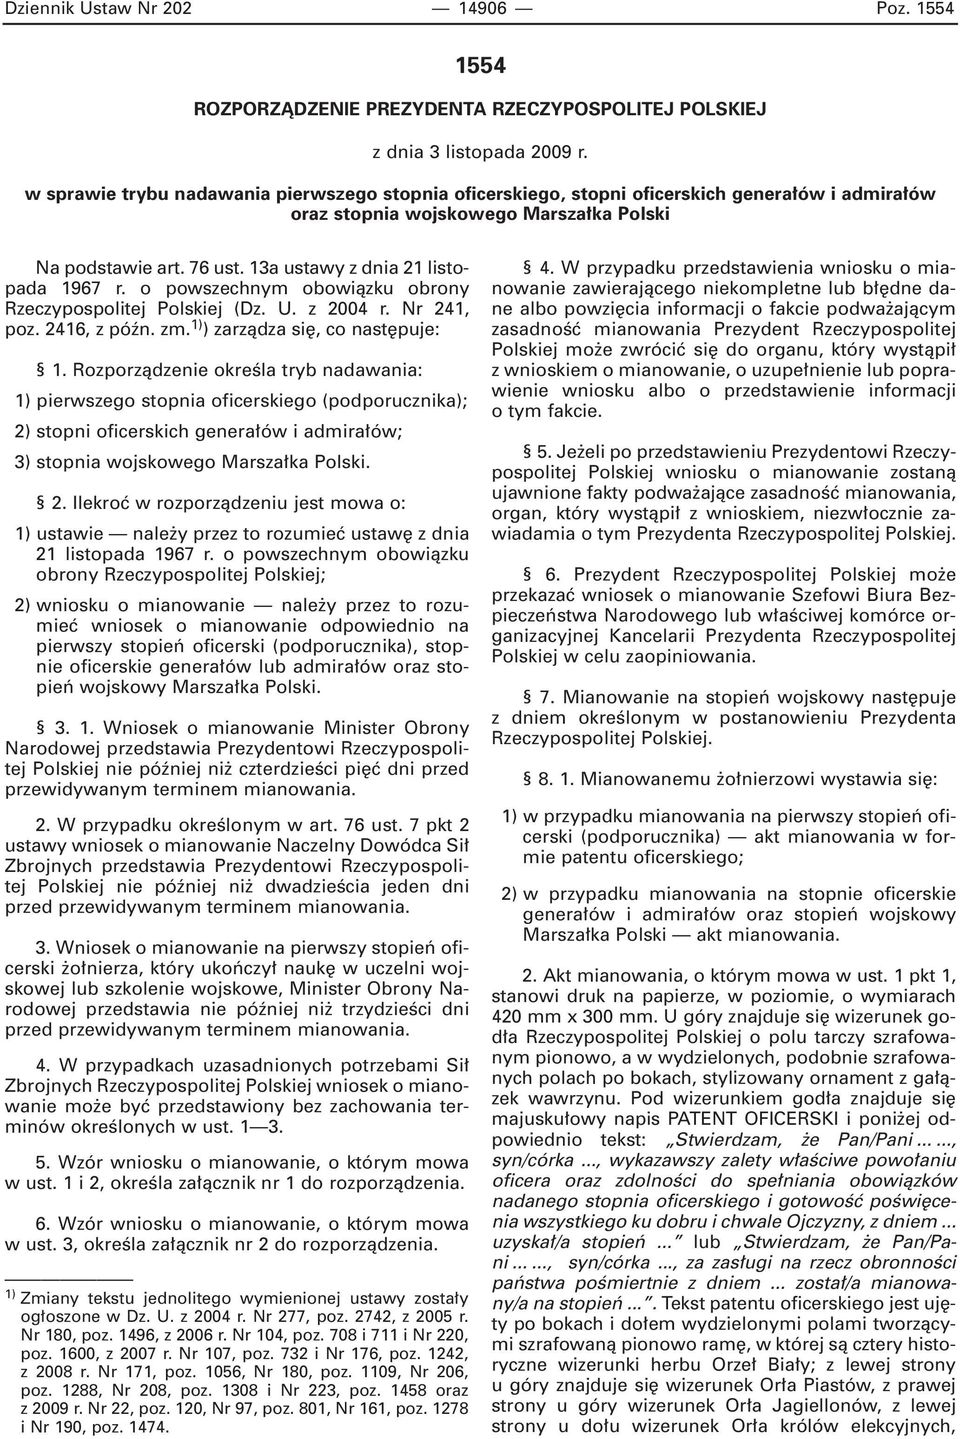 13a ustawy z dnia 21 listopada 1967 r. o powszechnym obowiàzku obrony Rzeczypospolitej Polskiej (Dz. U. z 2004 r. Nr 241, poz. 2416, z póên. zm. 1) ) zarzàdza si, co nast puje: 1.